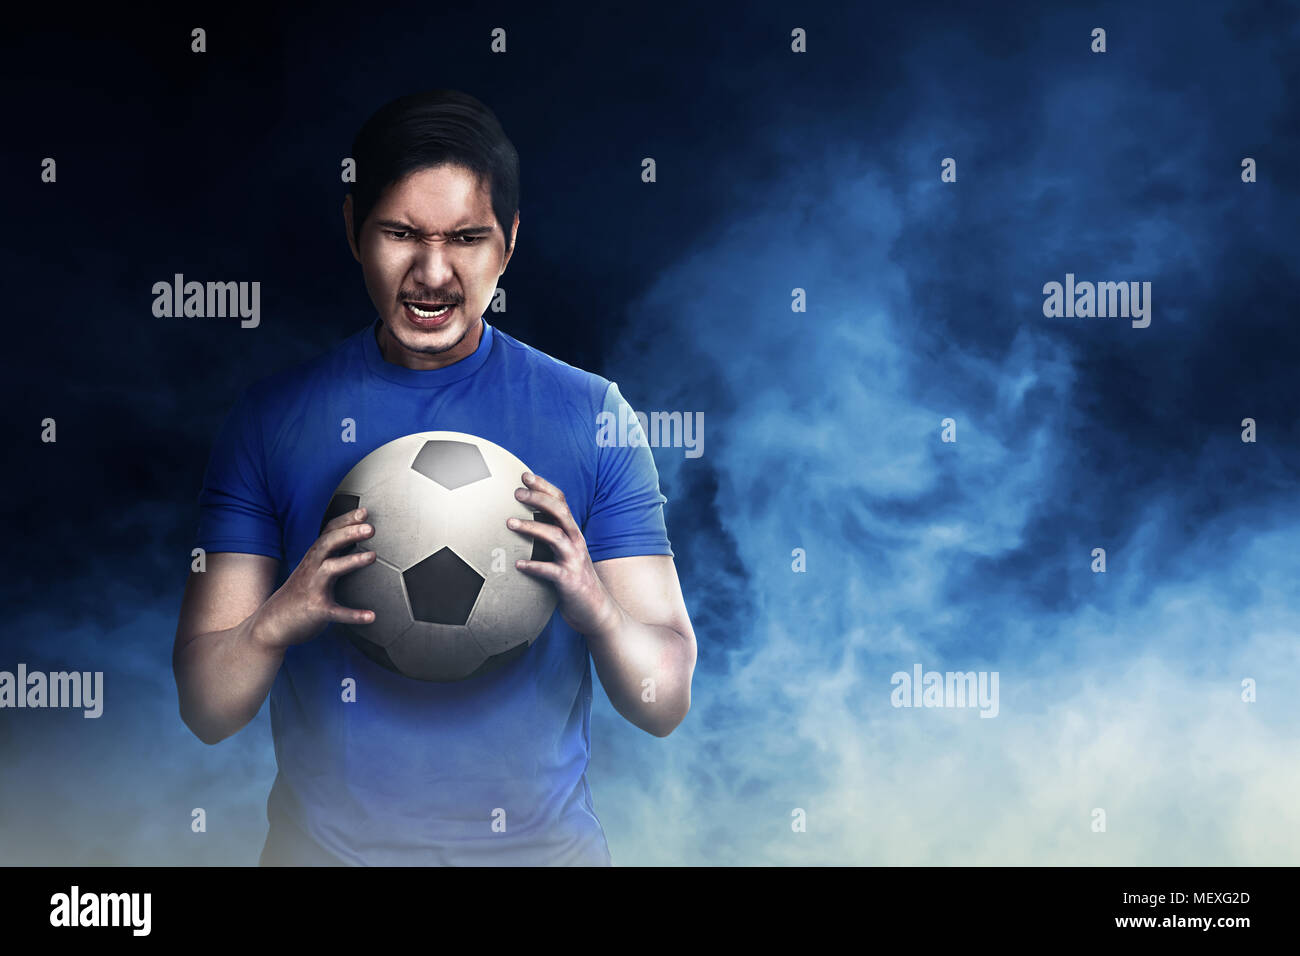 Bello il calcio asiatico giocatore in possesso della palla con sfondo drammatico Foto Stock